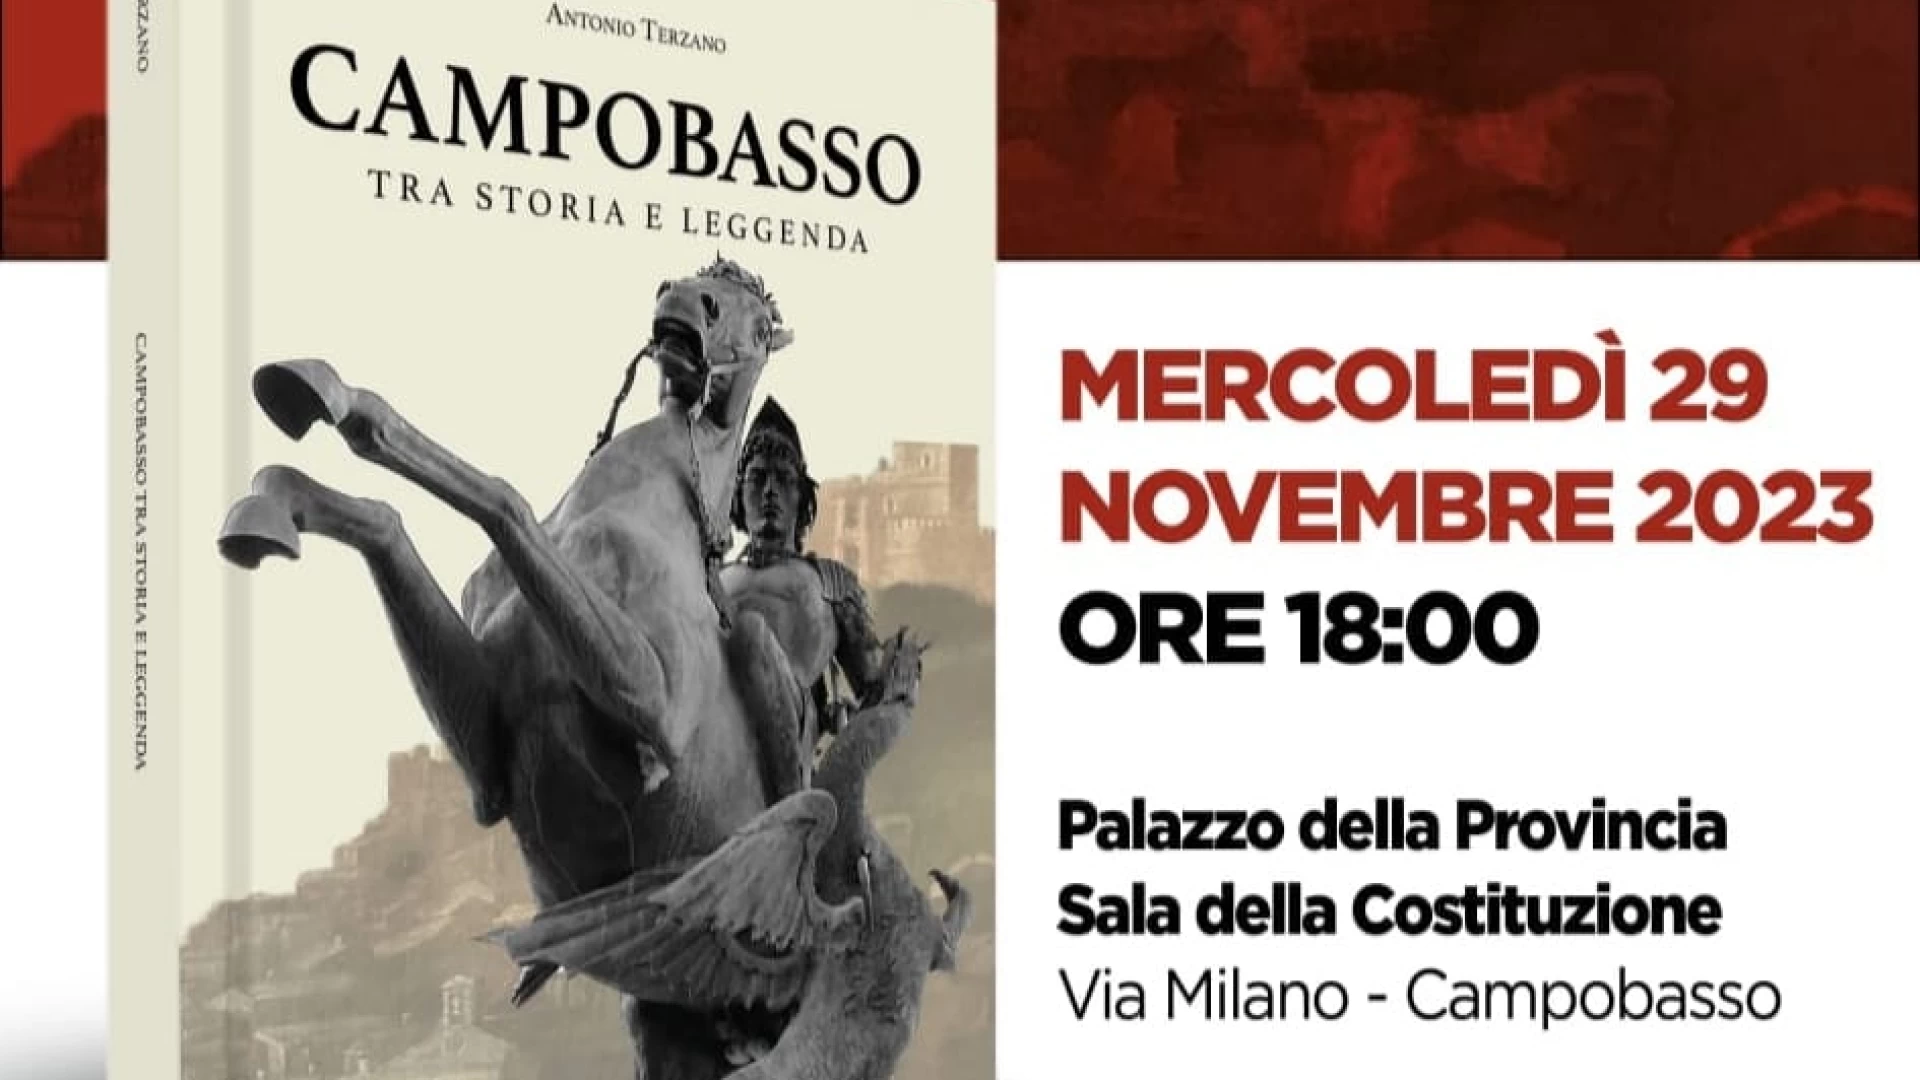 Esce ‘Campobasso tra storia e leggenda’, il libro di Antonio Terzano presentato da Franco Valente e Rita Frattolillo